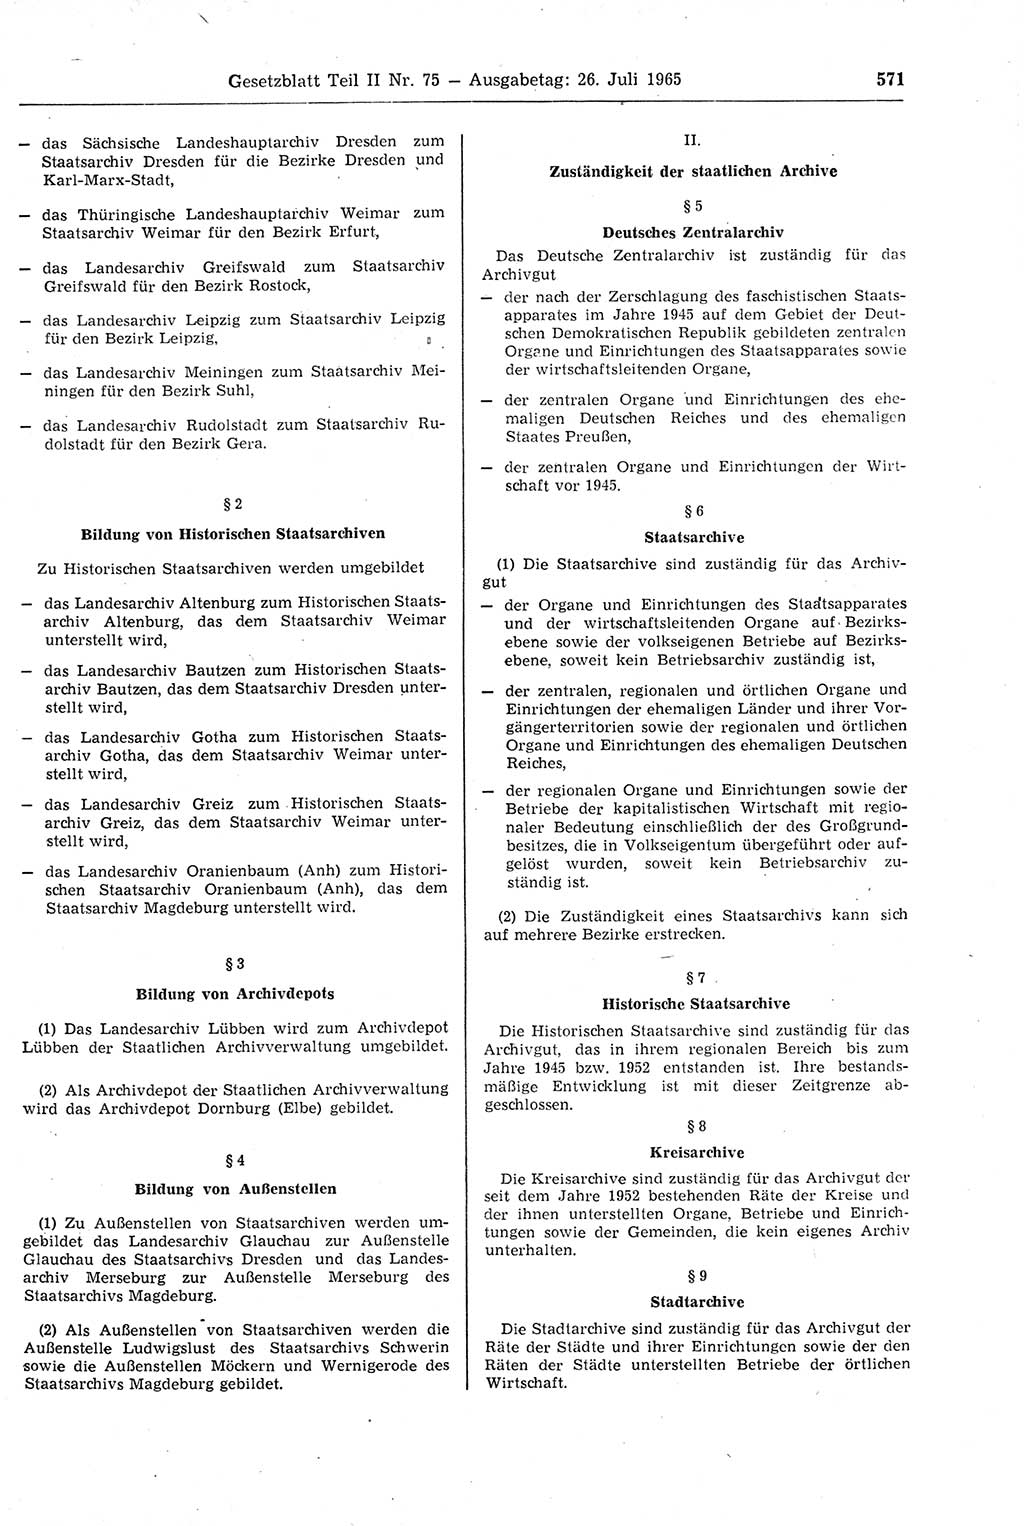 Gesetzblatt (GBl.) der Deutschen Demokratischen Republik (DDR) Teil ⅠⅠ 1965, Seite 571 (GBl. DDR ⅠⅠ 1965, S. 571)